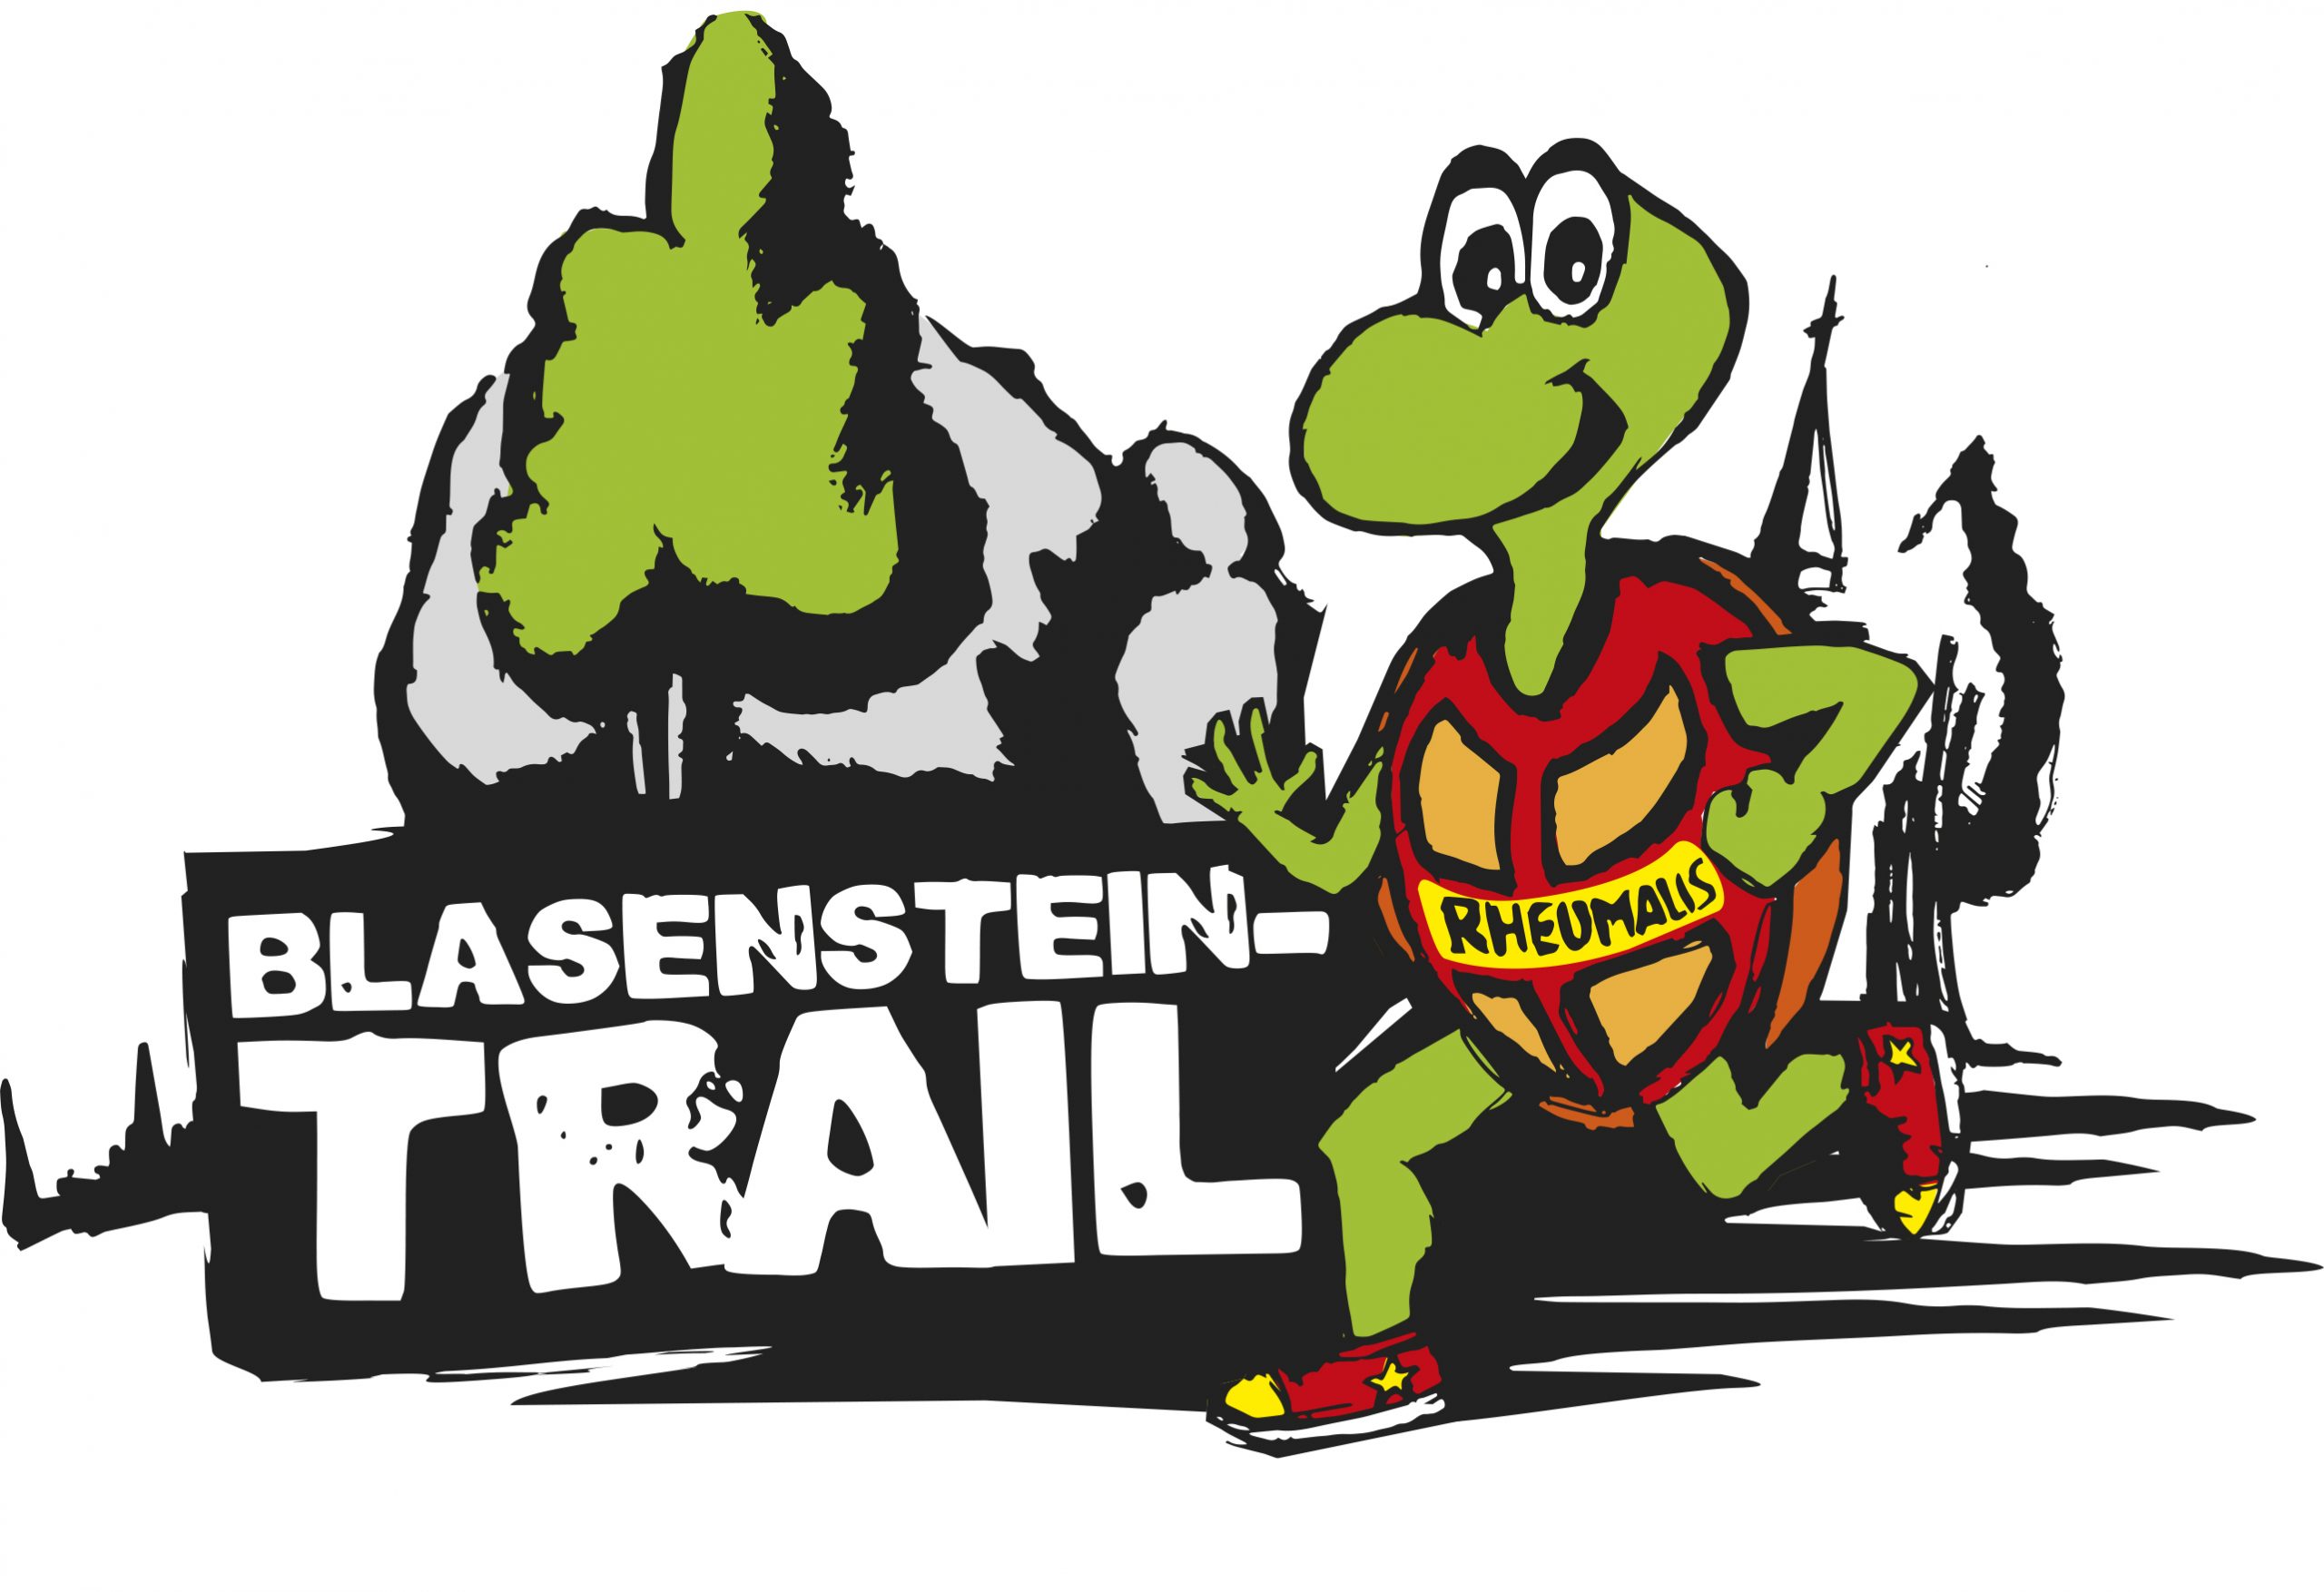 (c) Blasenstein-trail.at